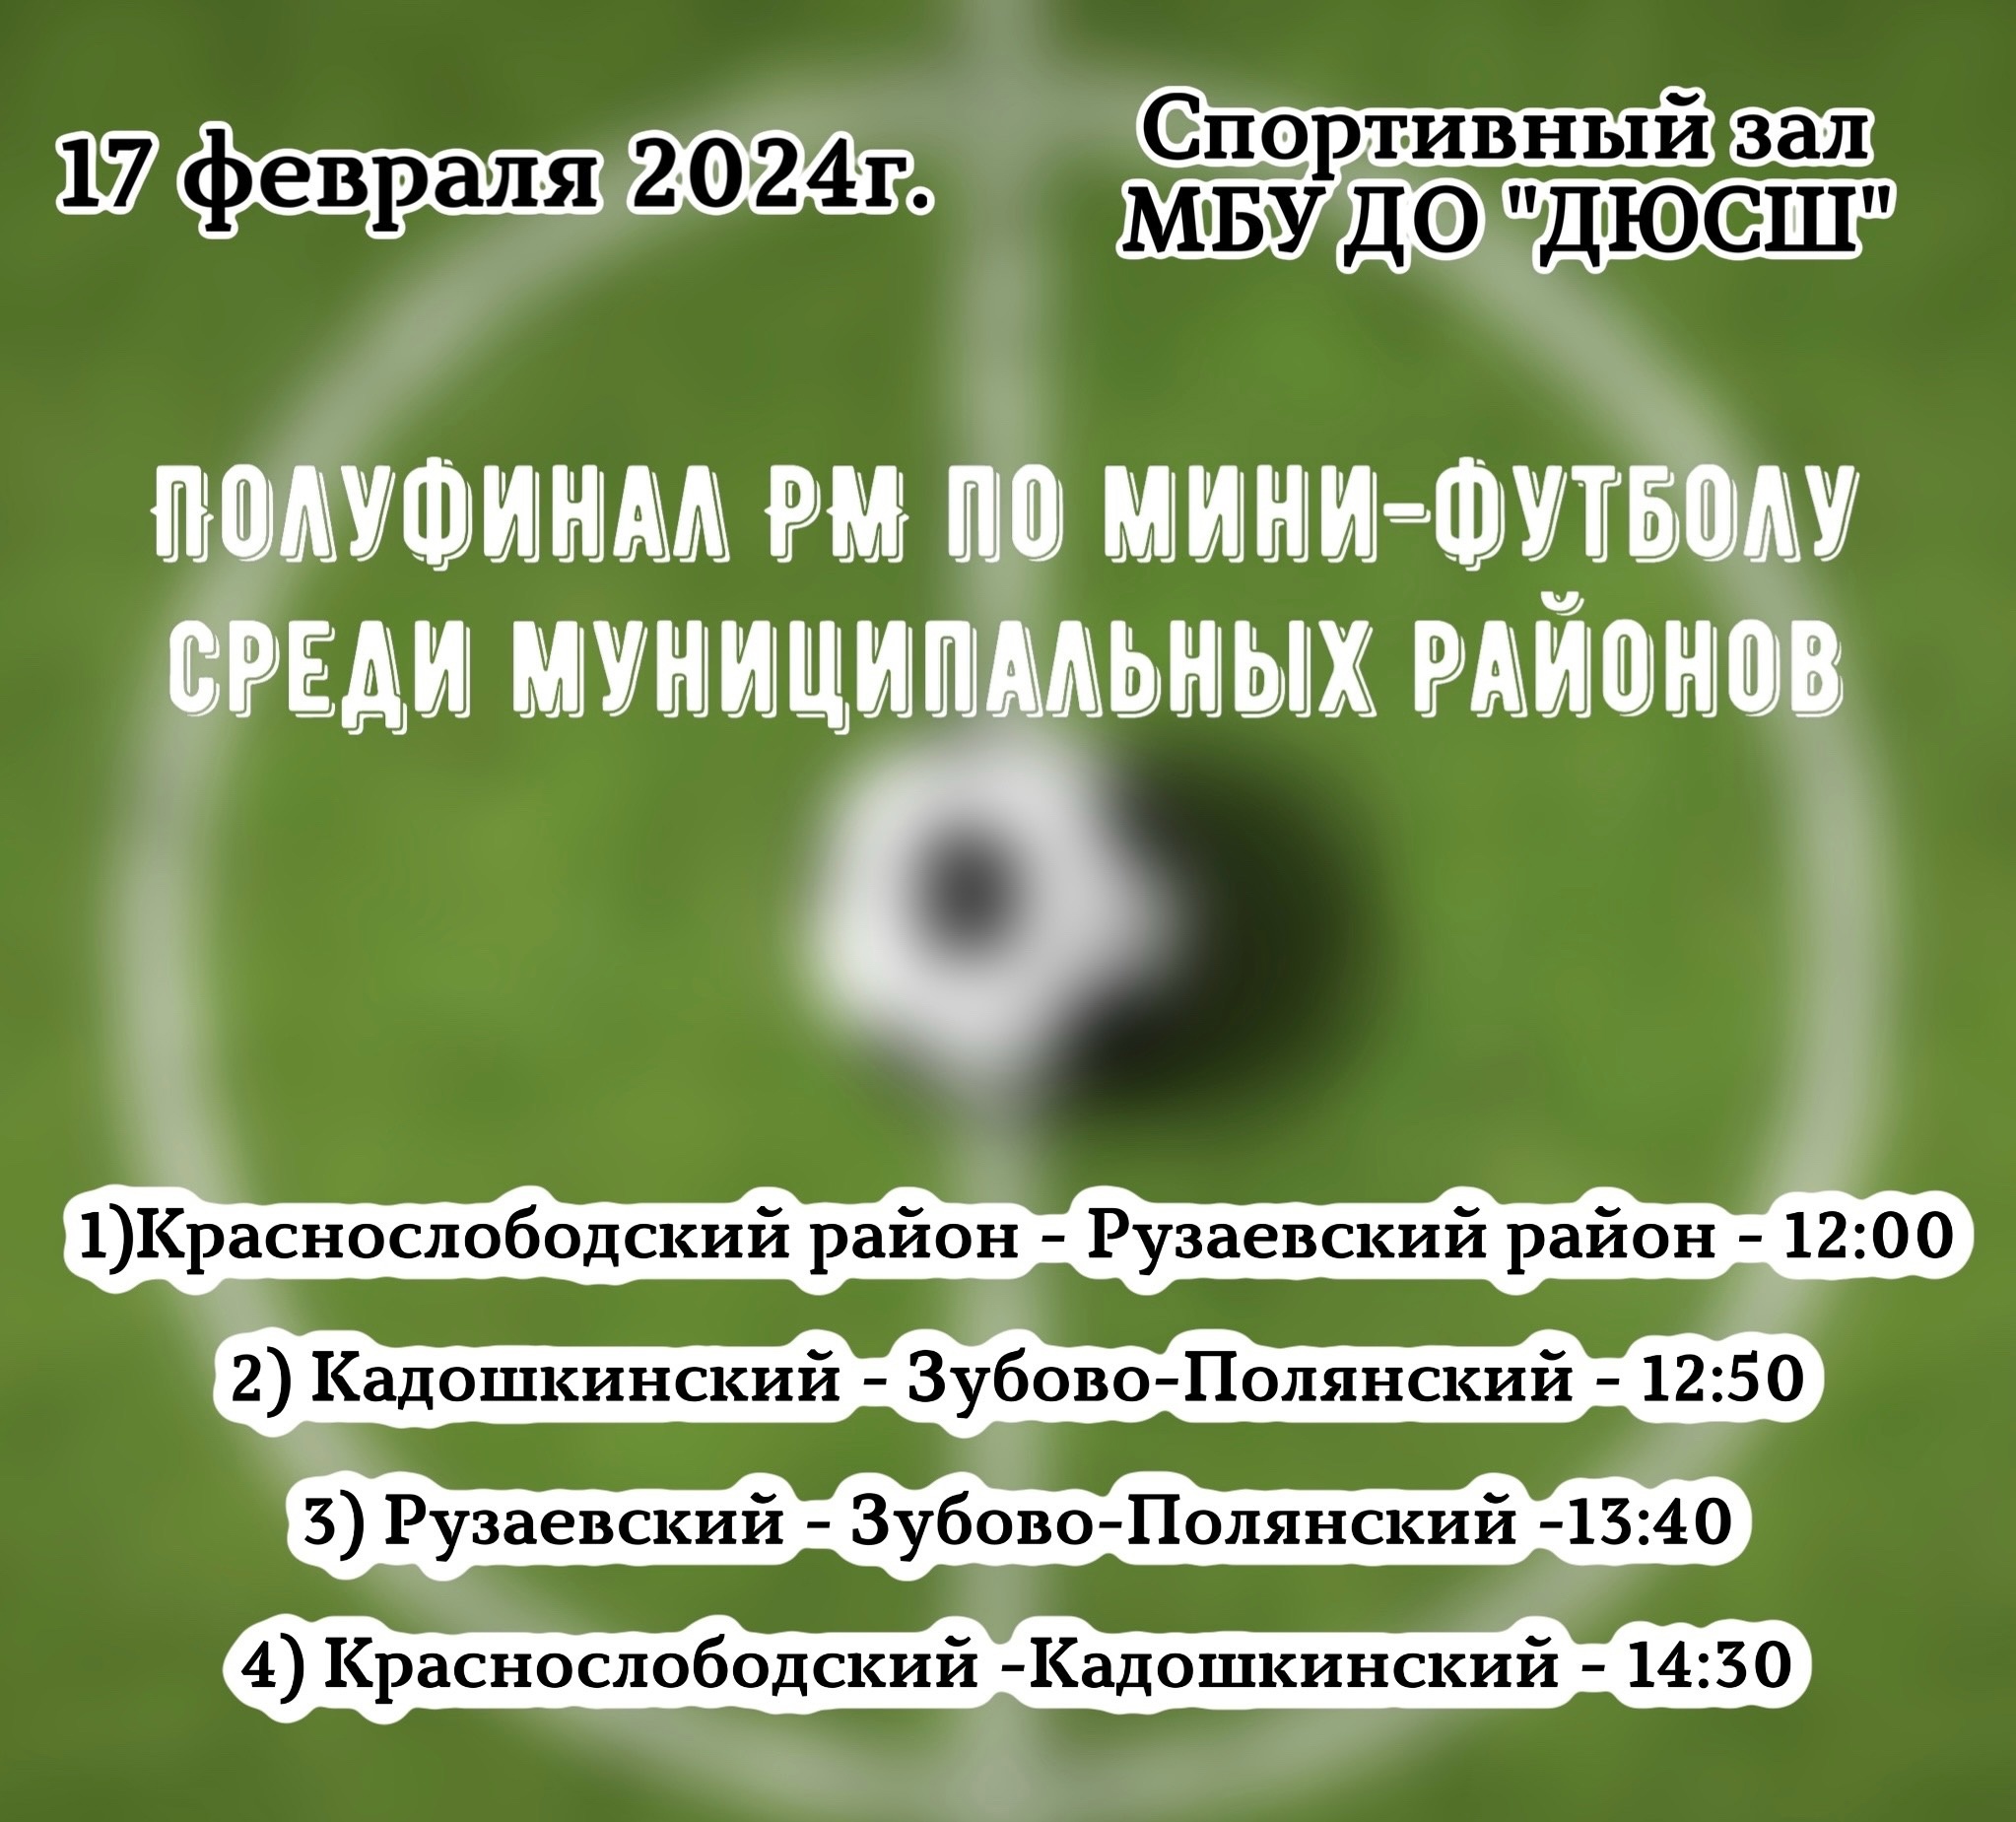 Полуфинал РМ по мини-футболу среди муниципальных районов.